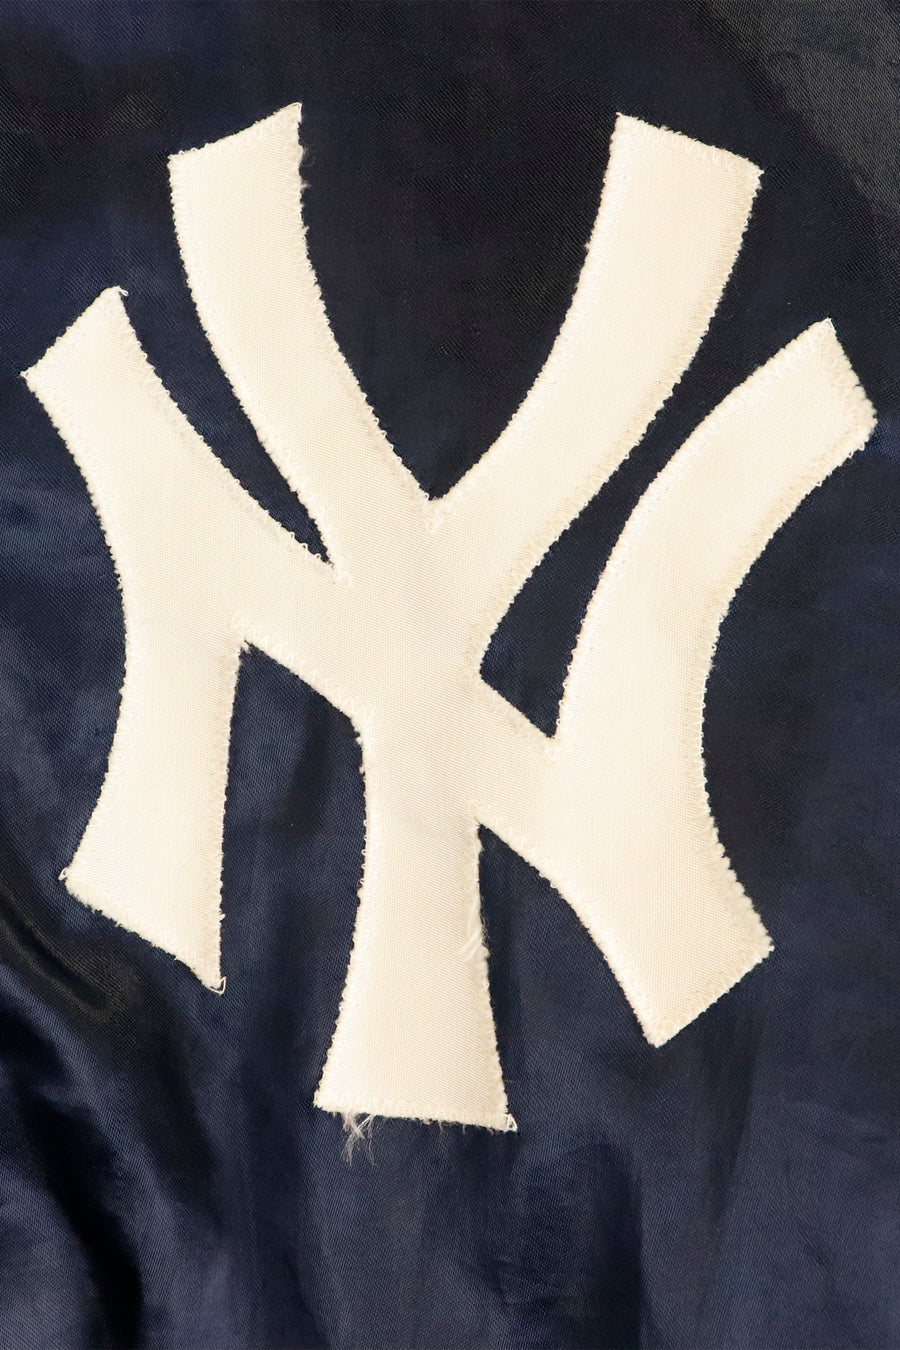 Vintage MLB NY Yankees Snap Button Bomber Jacket Sz L